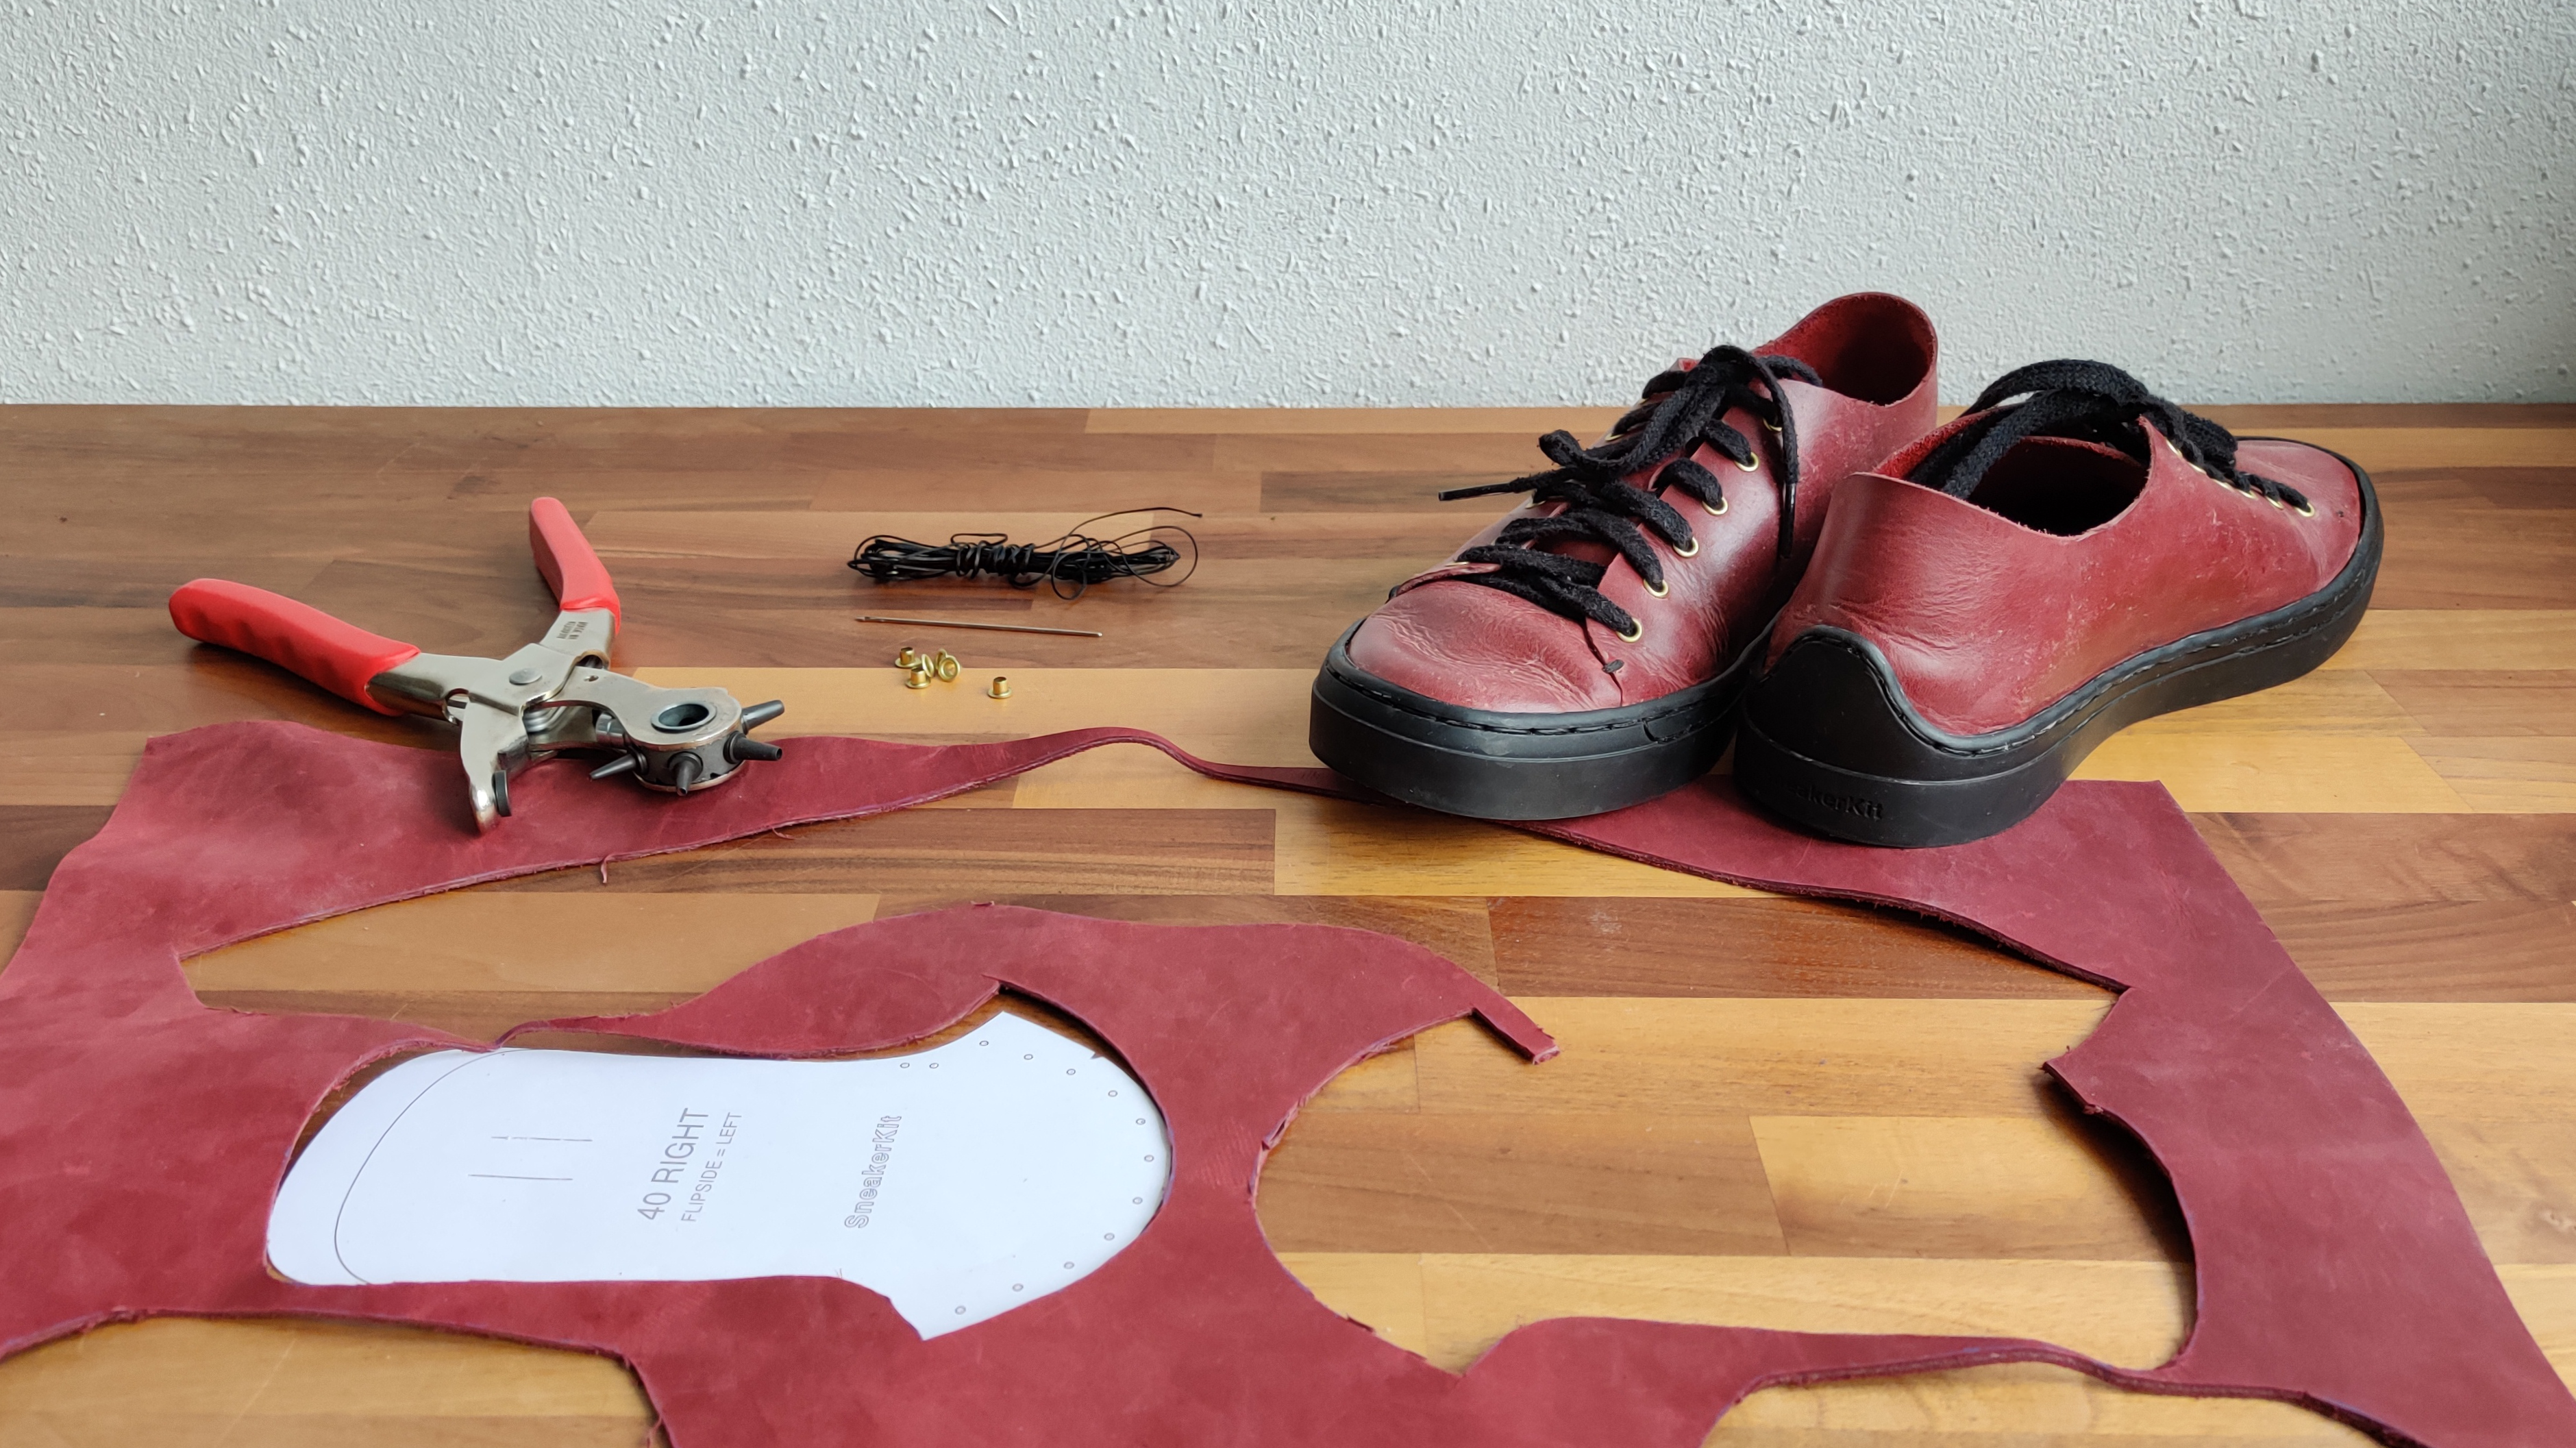 SneakerKit: Nachhaltige Schuhe zum selber nähen | heise online